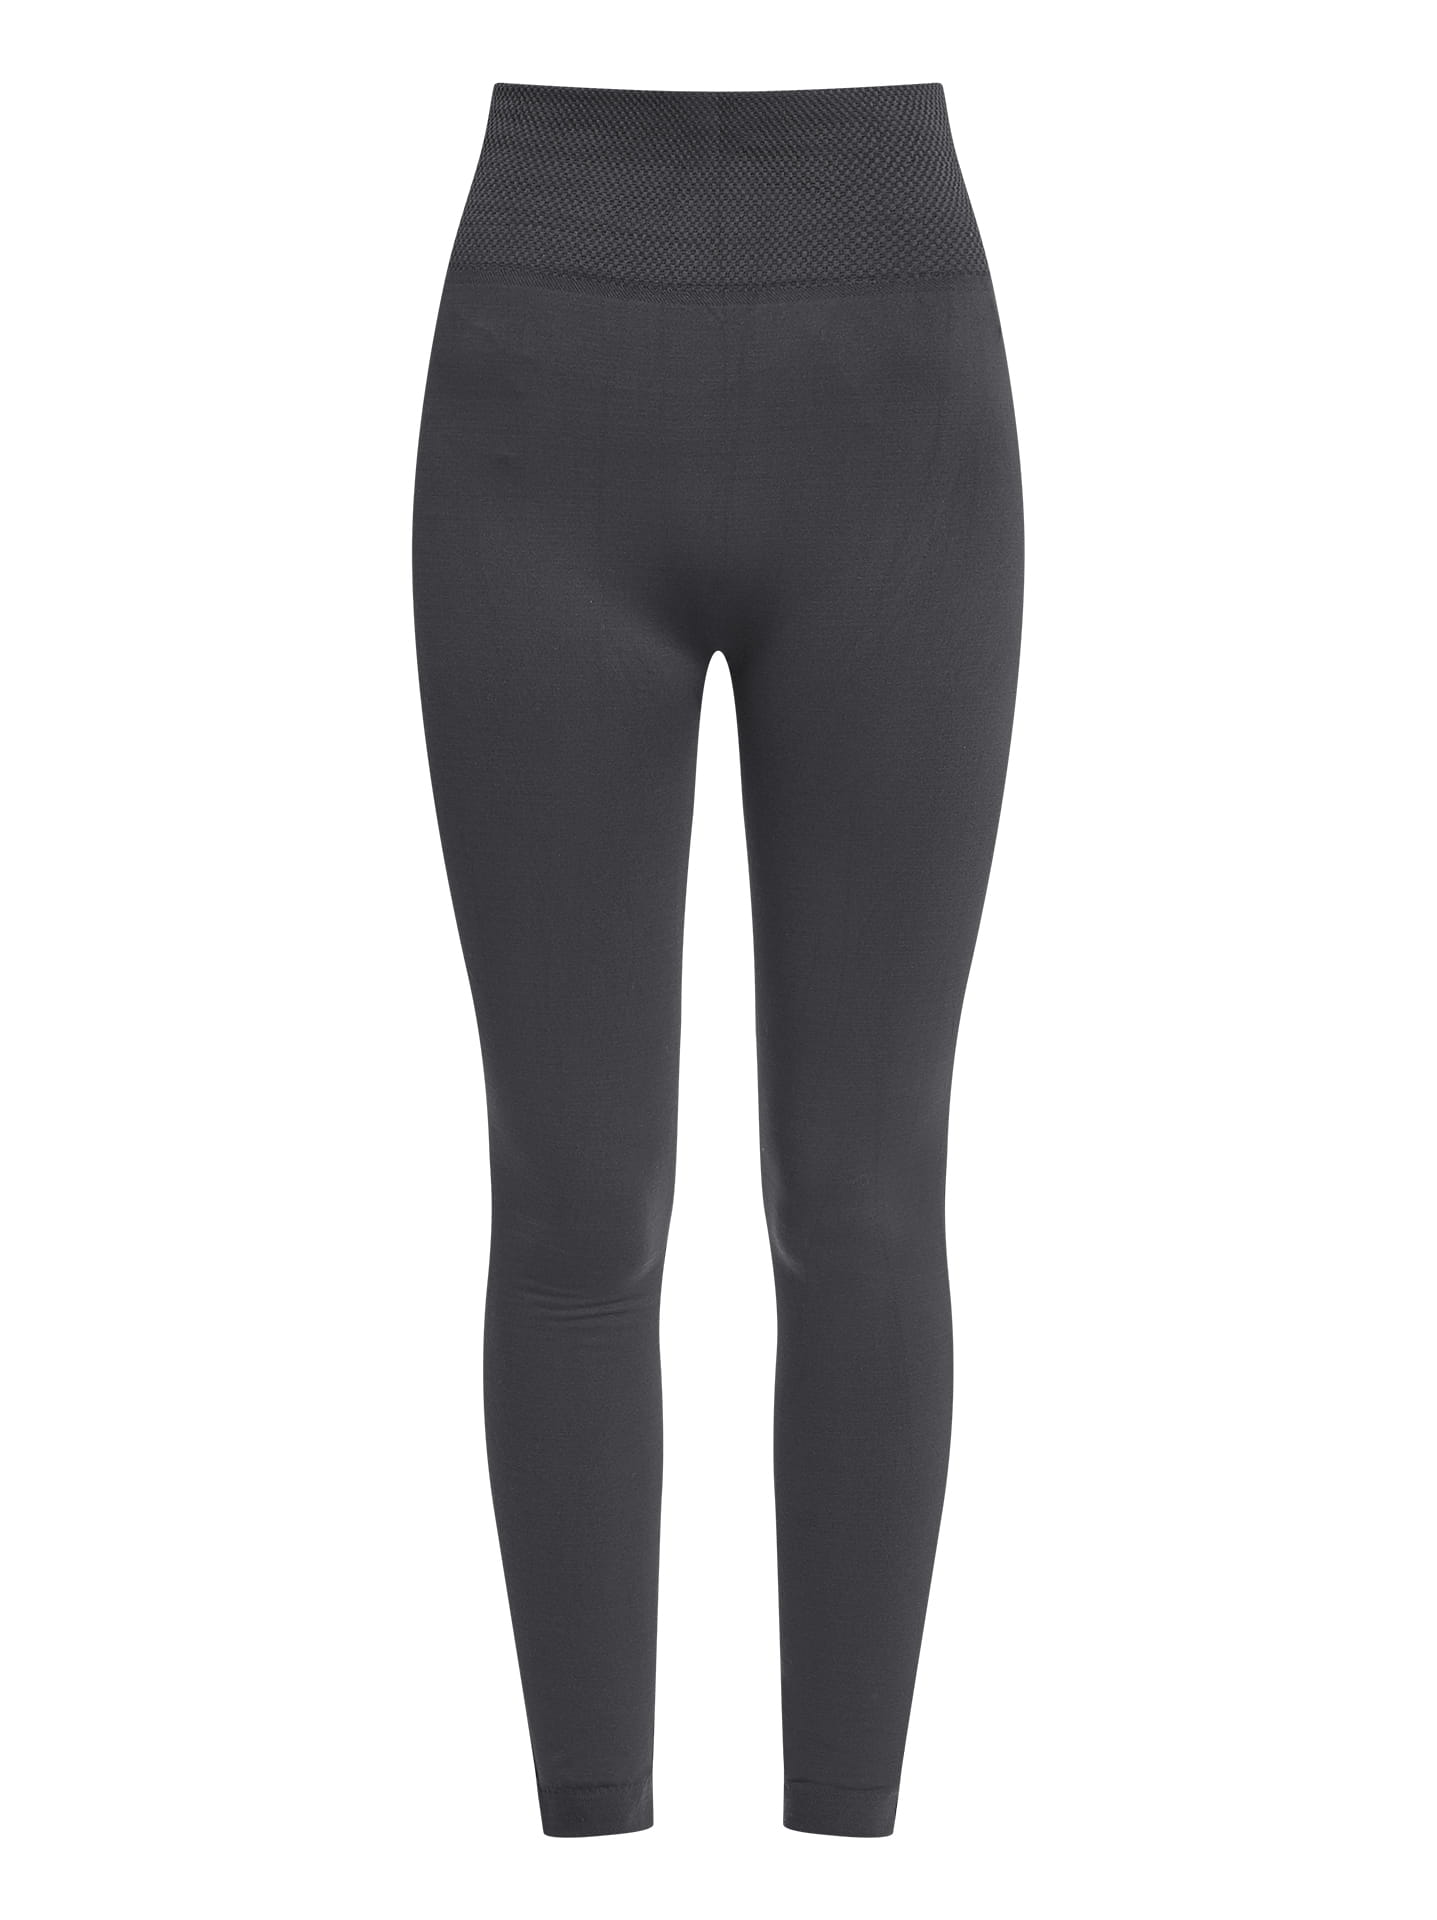 Elastic thermal leggings in dark grey, 6.99€